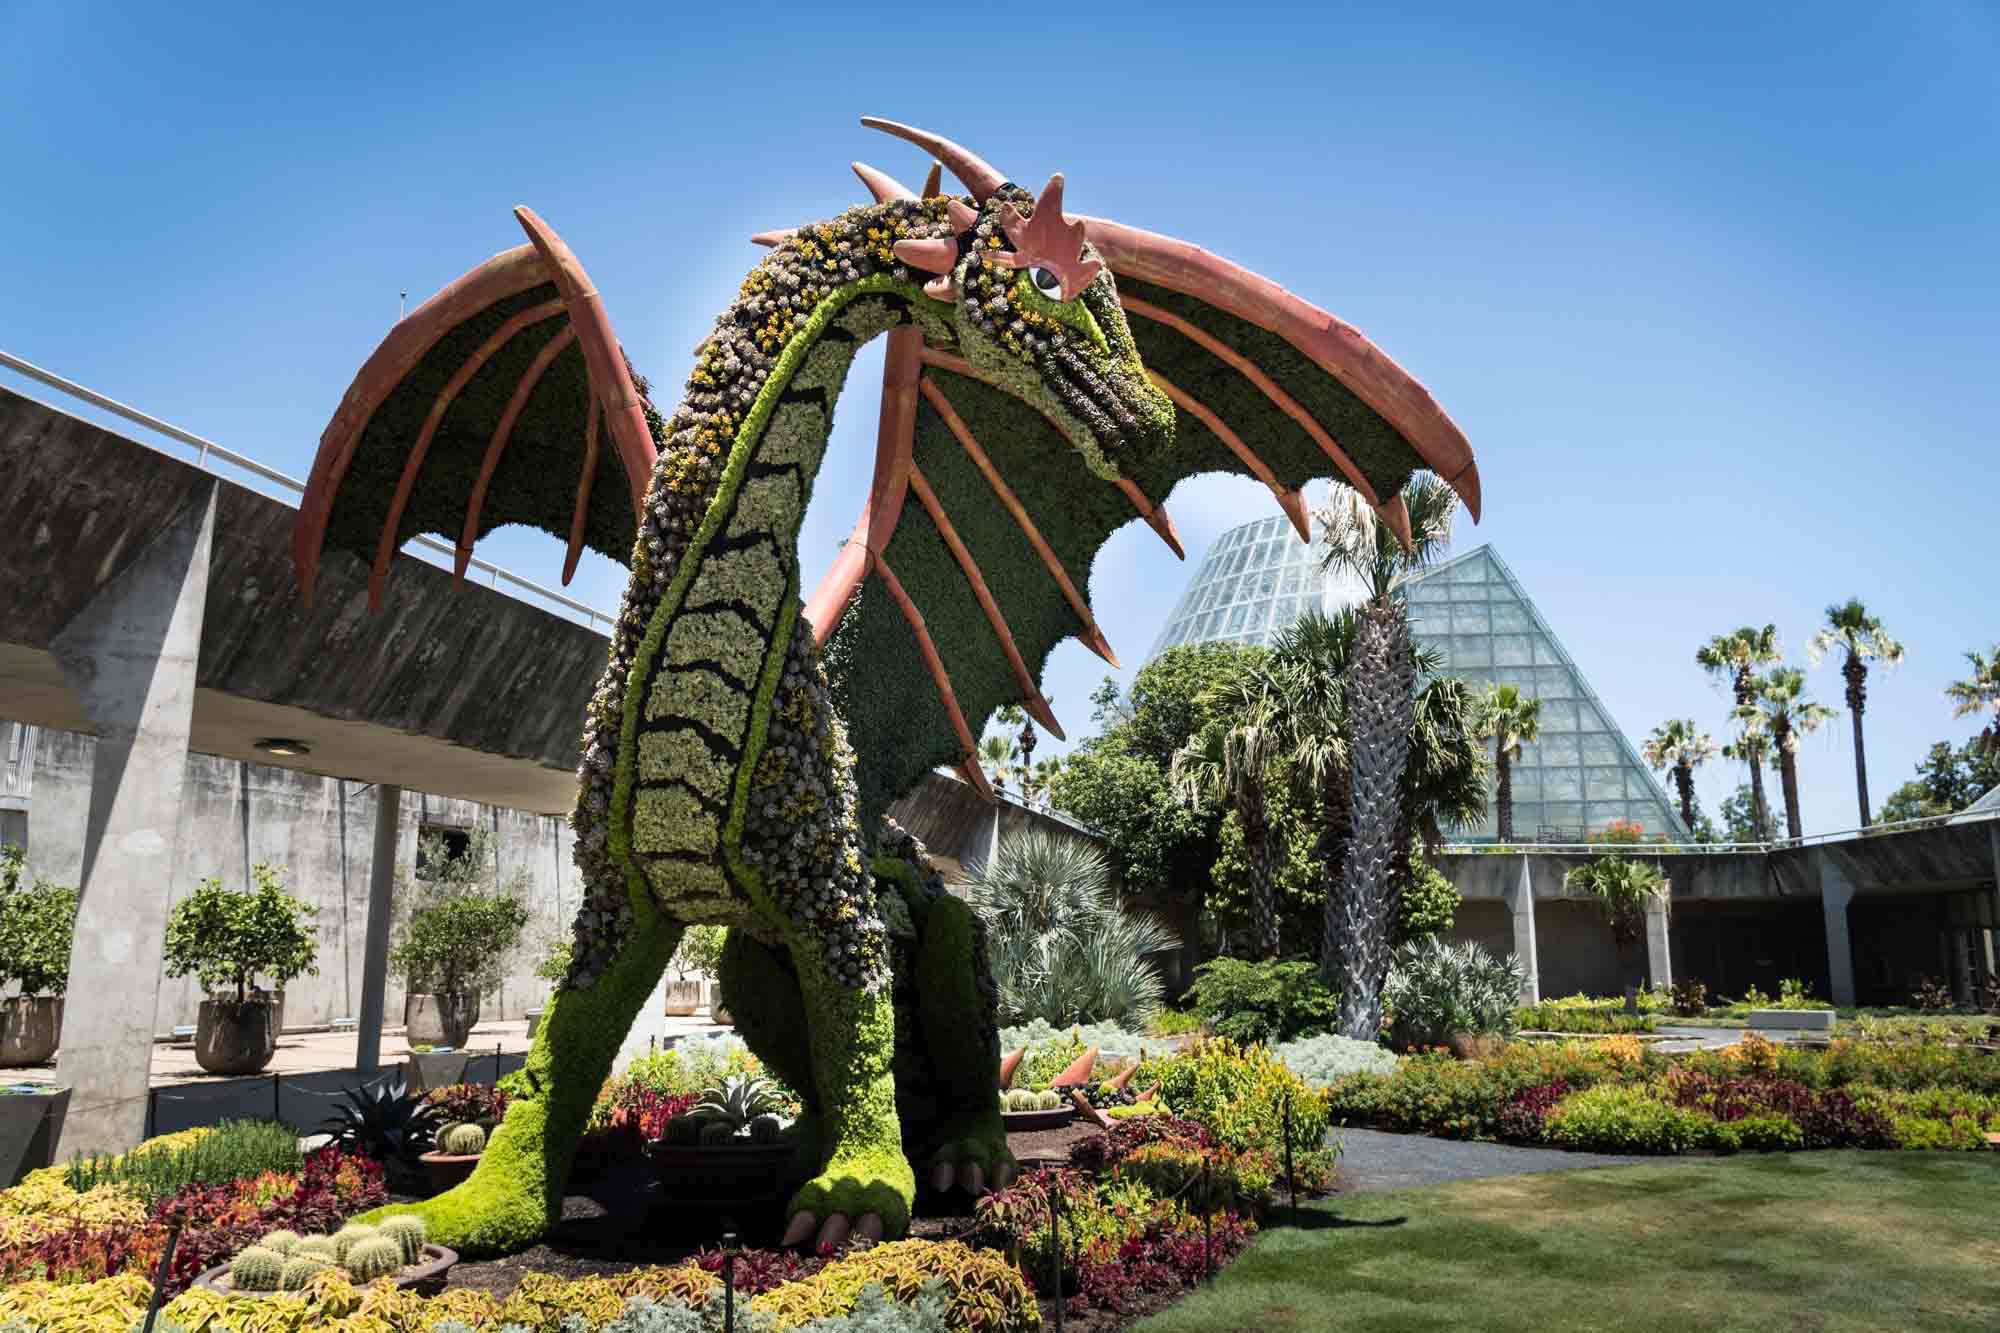 Dragon topiary at the San Antonio Botanical Gardens